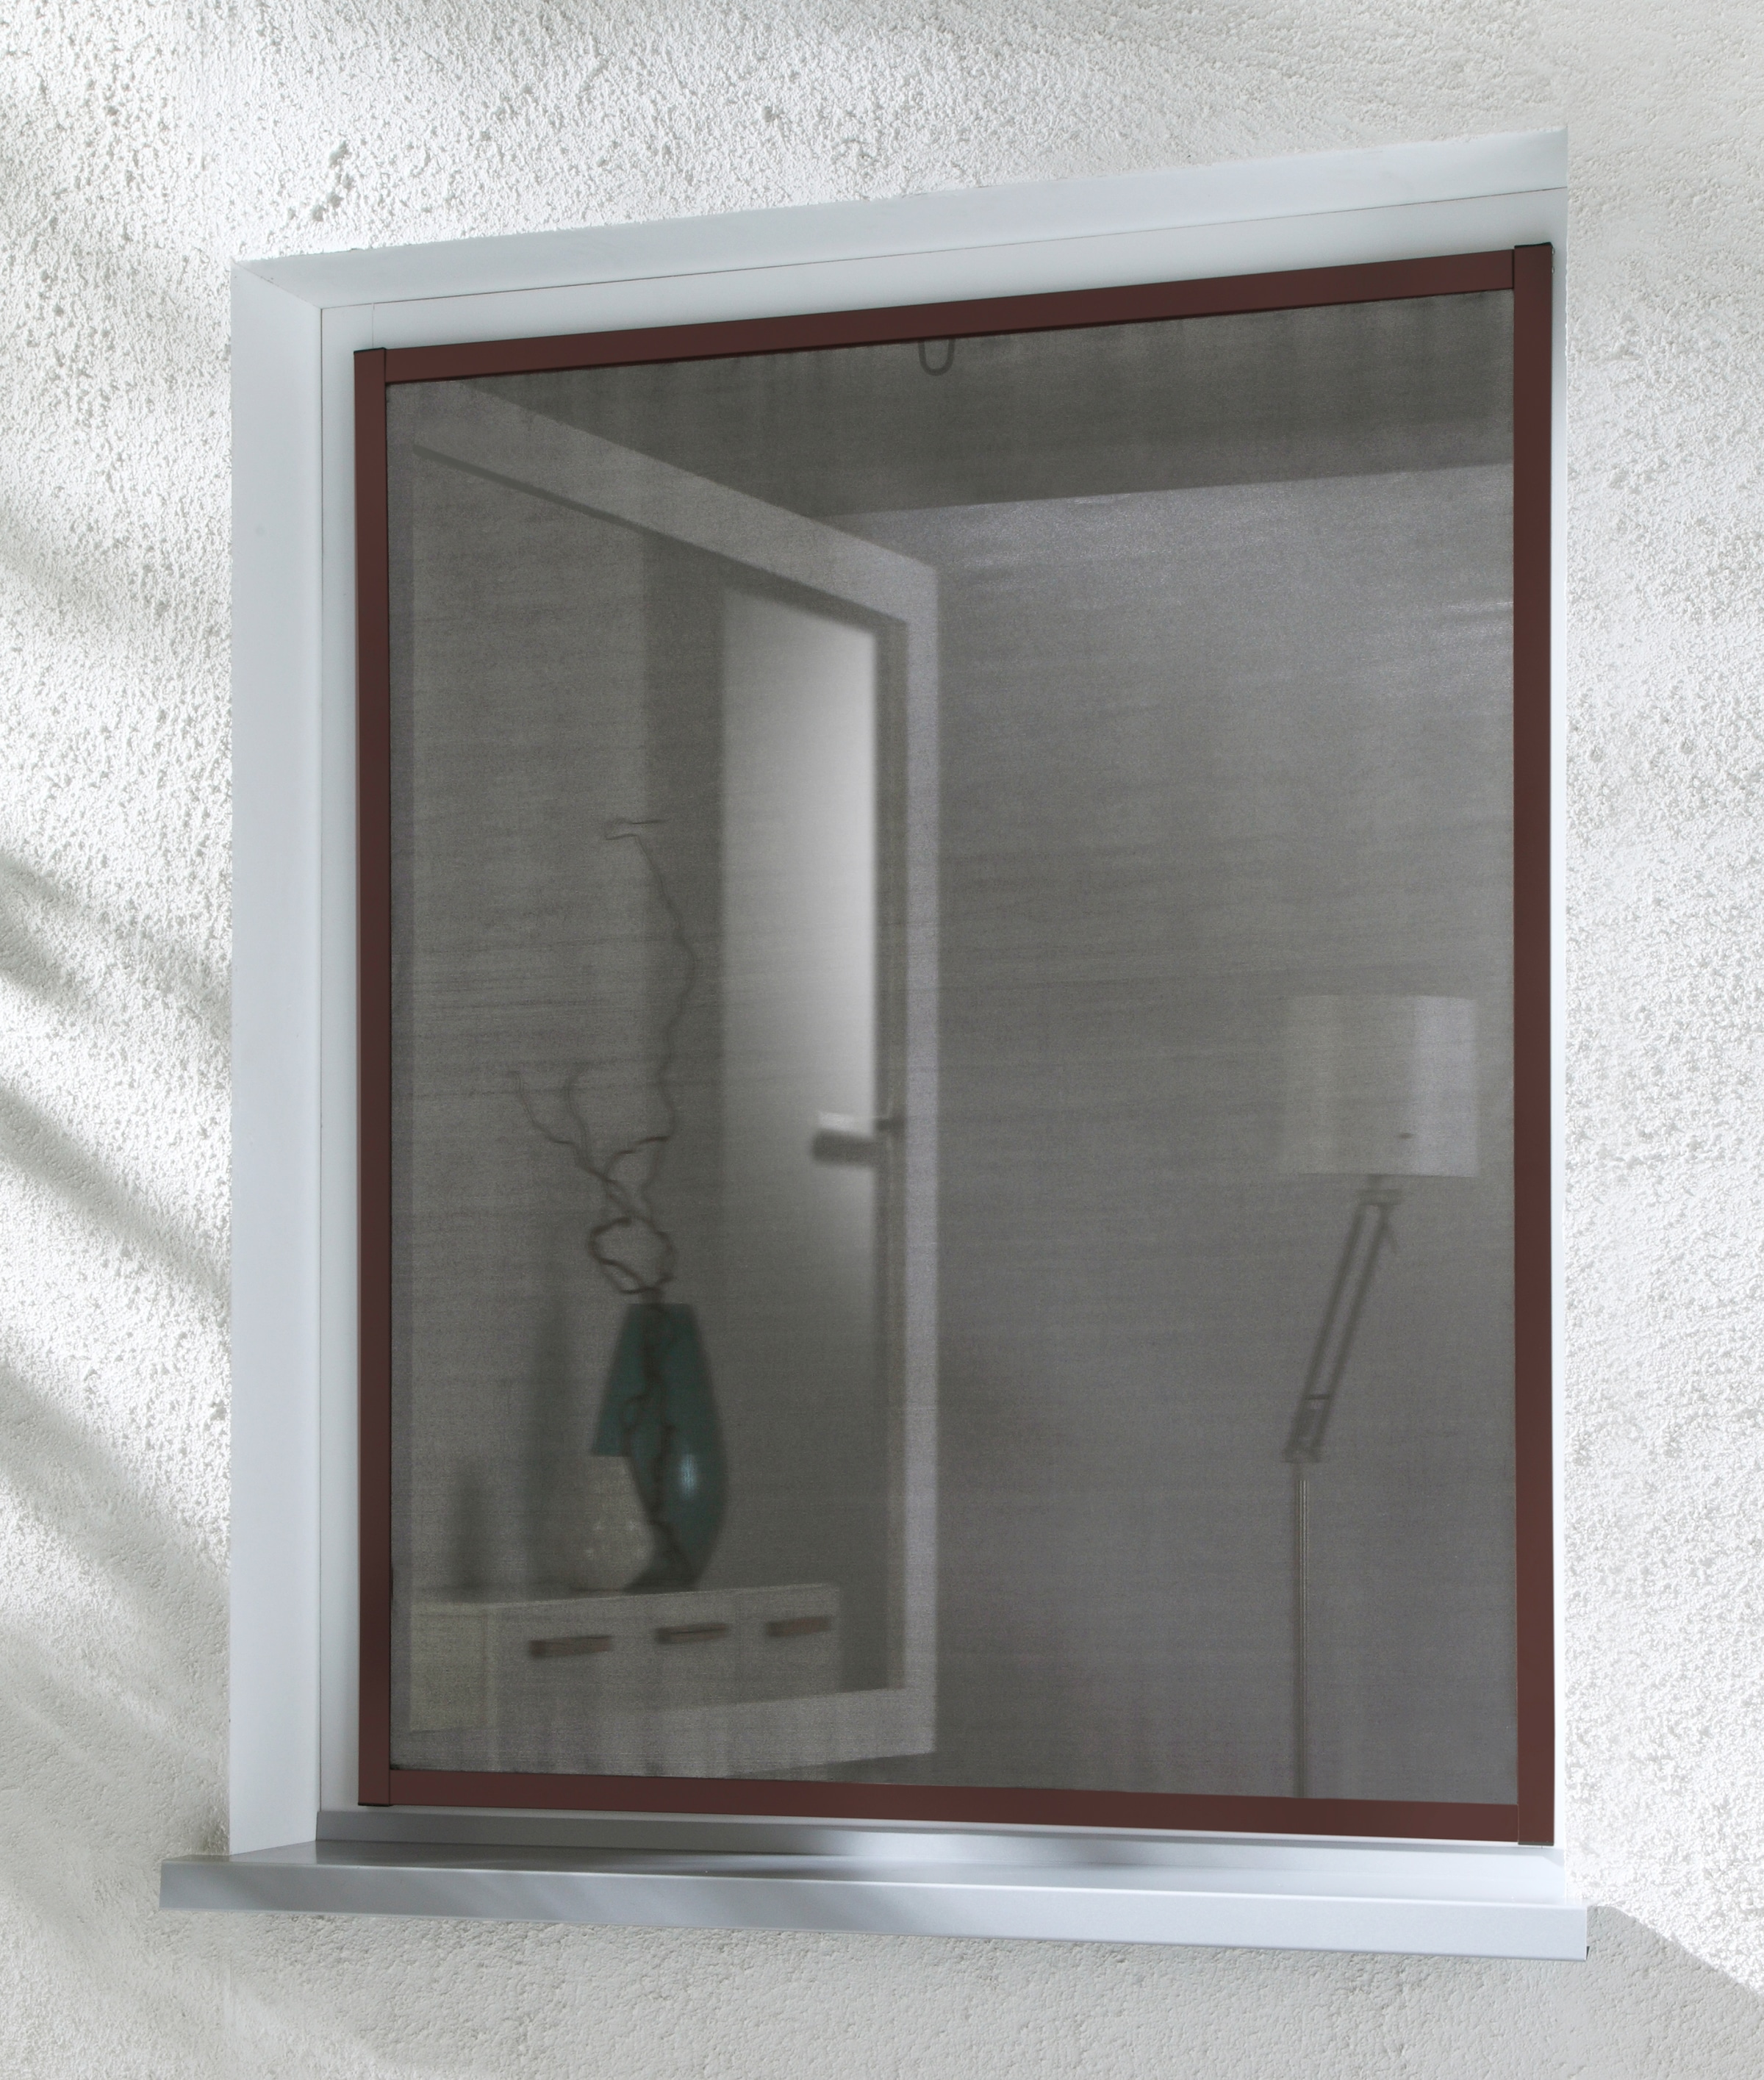 hecht international Insektenschutz-Fensterrahmen »MASTER SLIM POLLE«, braun/anthrazit, BxH: 100x120 cm